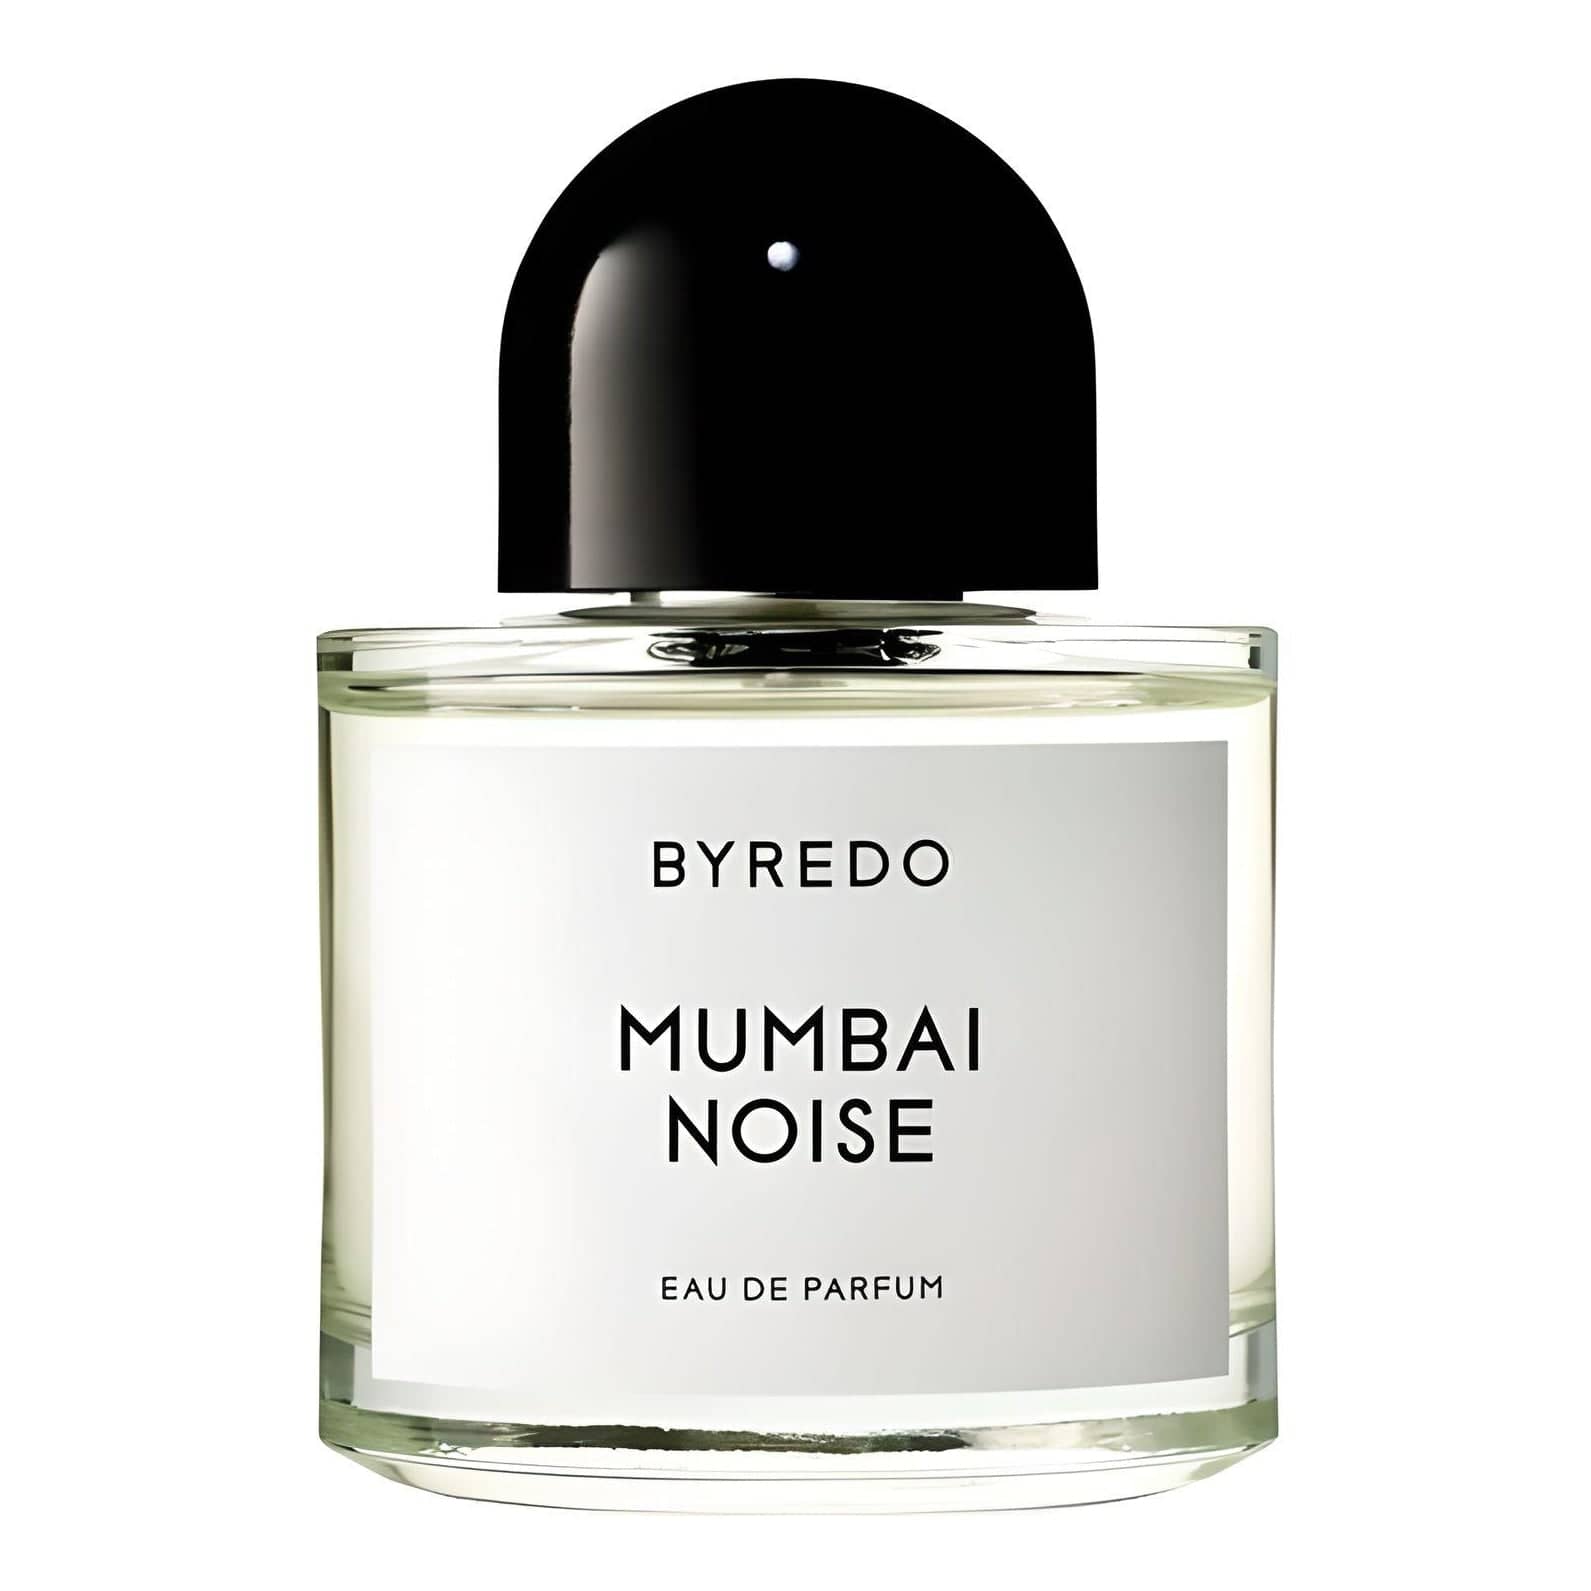 Mumbai Noise Eau de Parfum Eau de Parfum BYREDO   